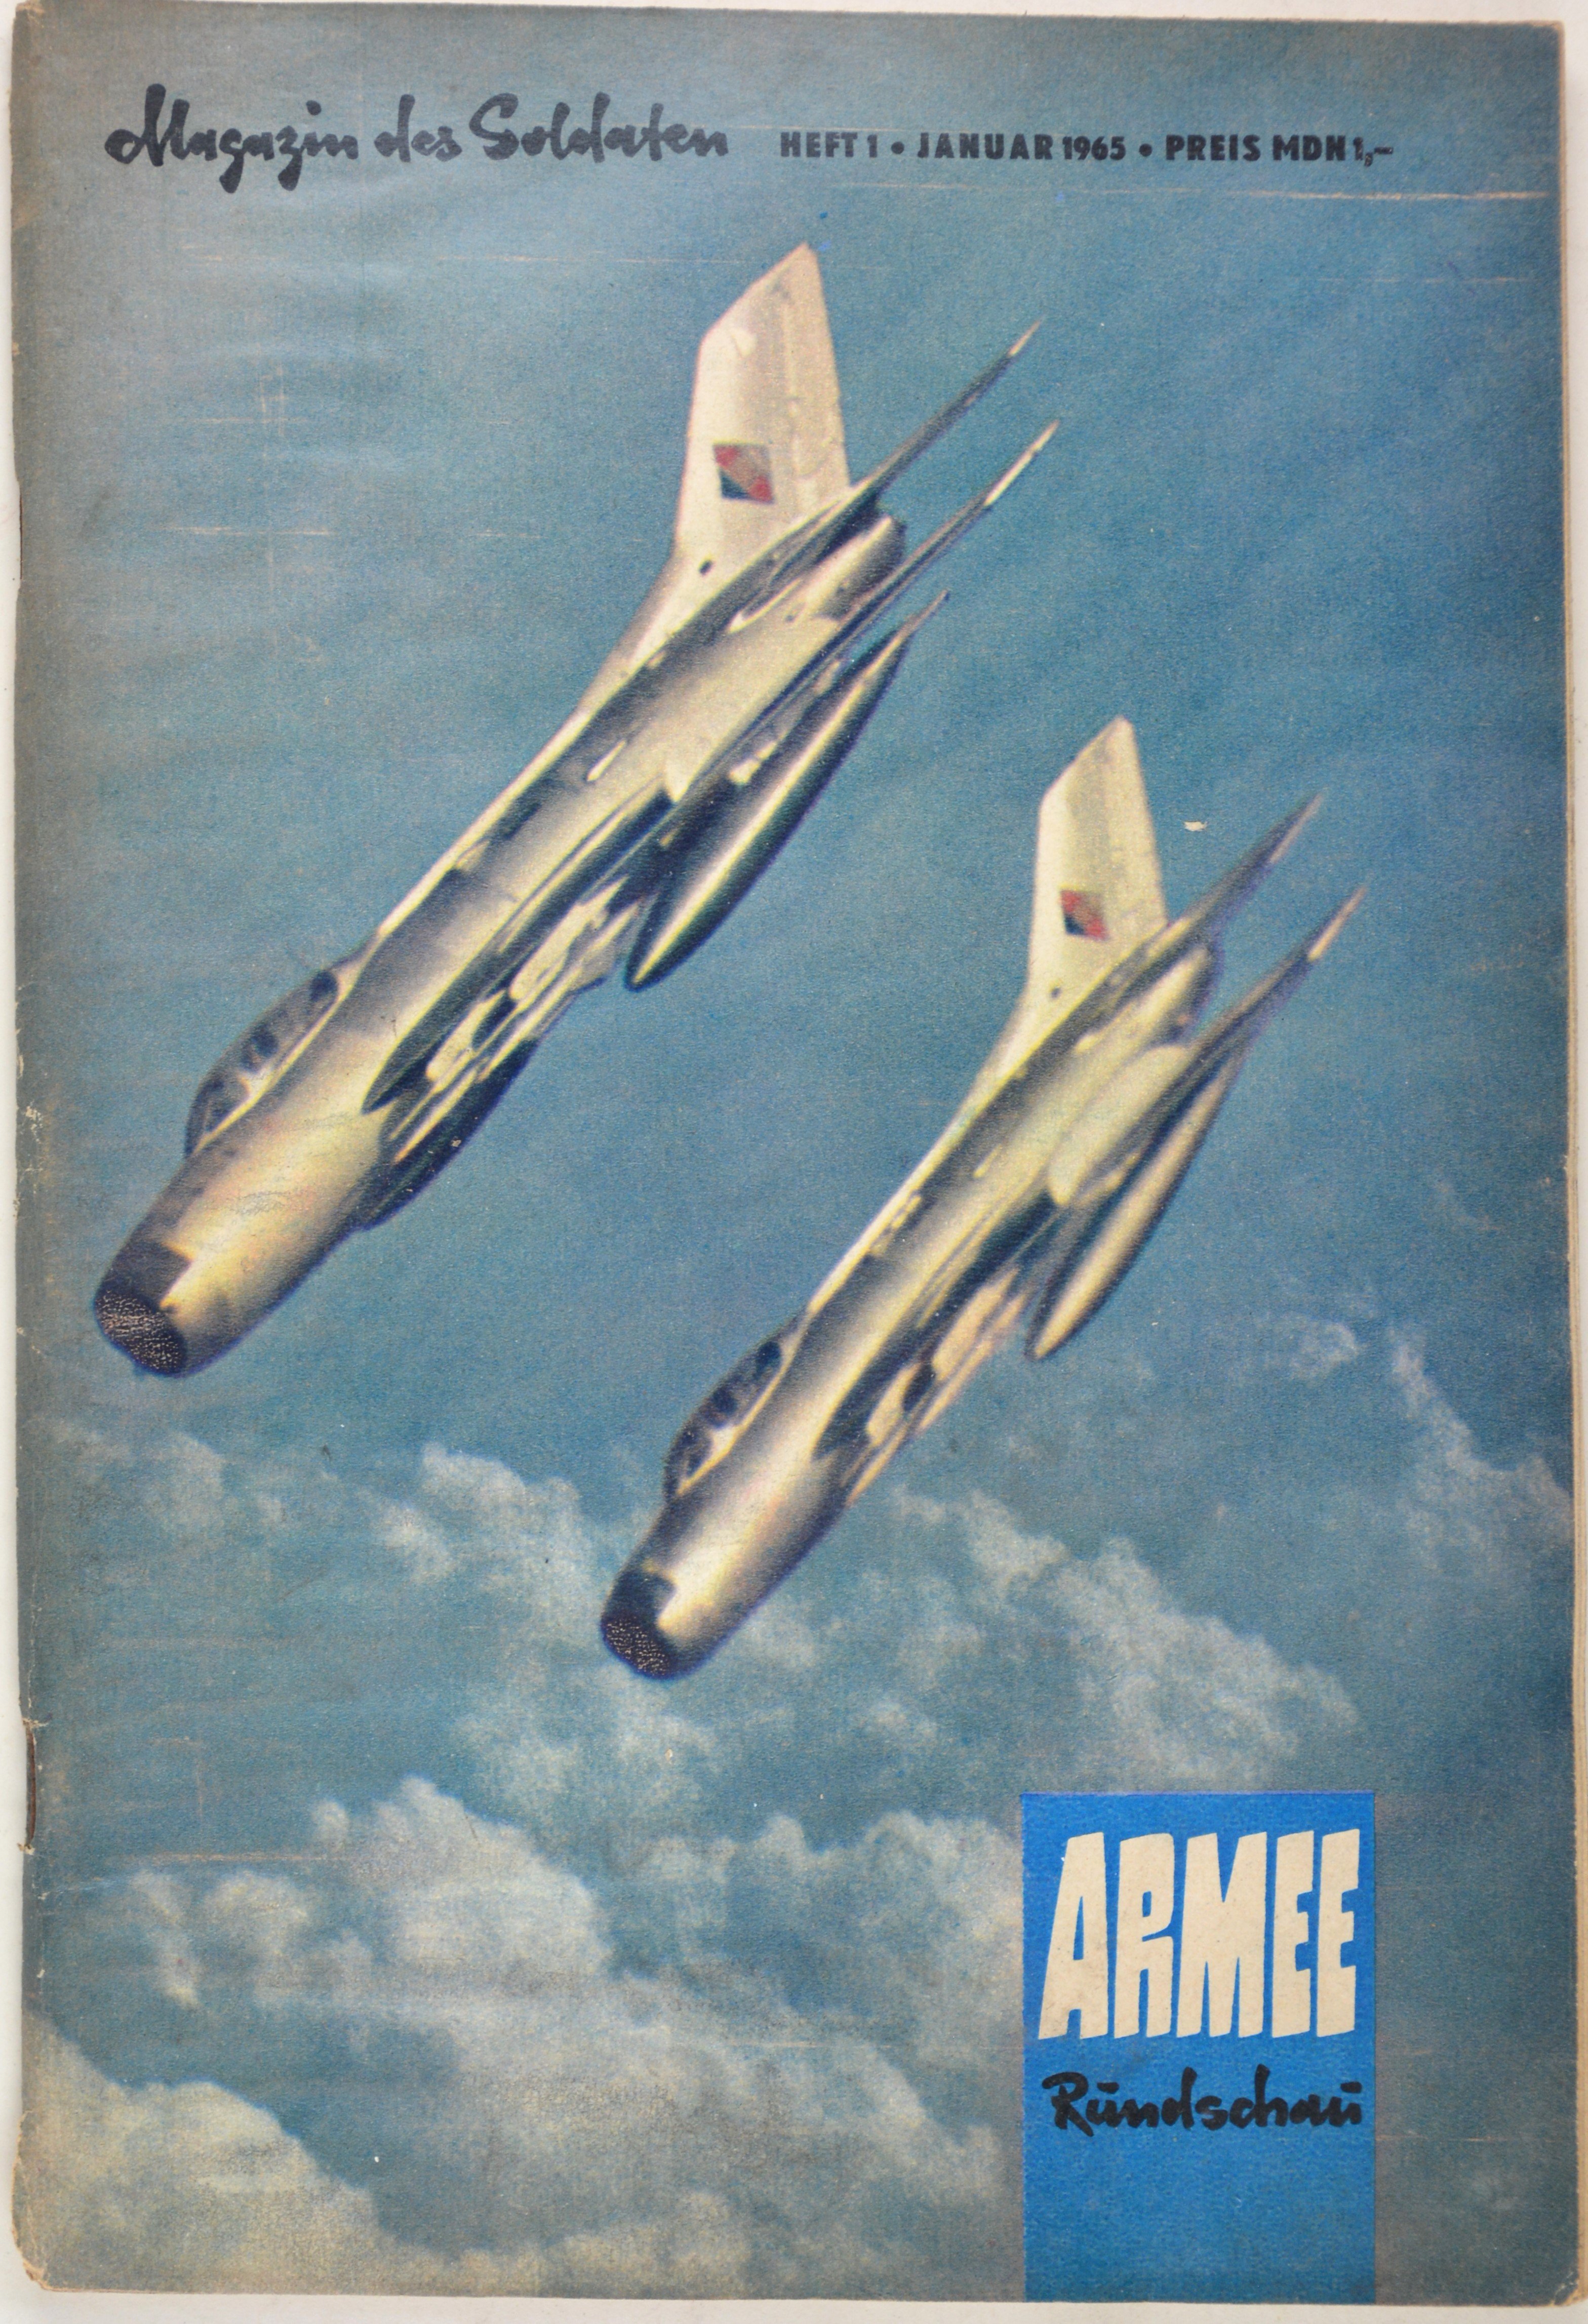 Armeerundschau - Magazin des Soldaten (1965), Heft 1 (DDR Geschichtsmuseum im Dokumentationszentrum Perleberg CC BY-SA)